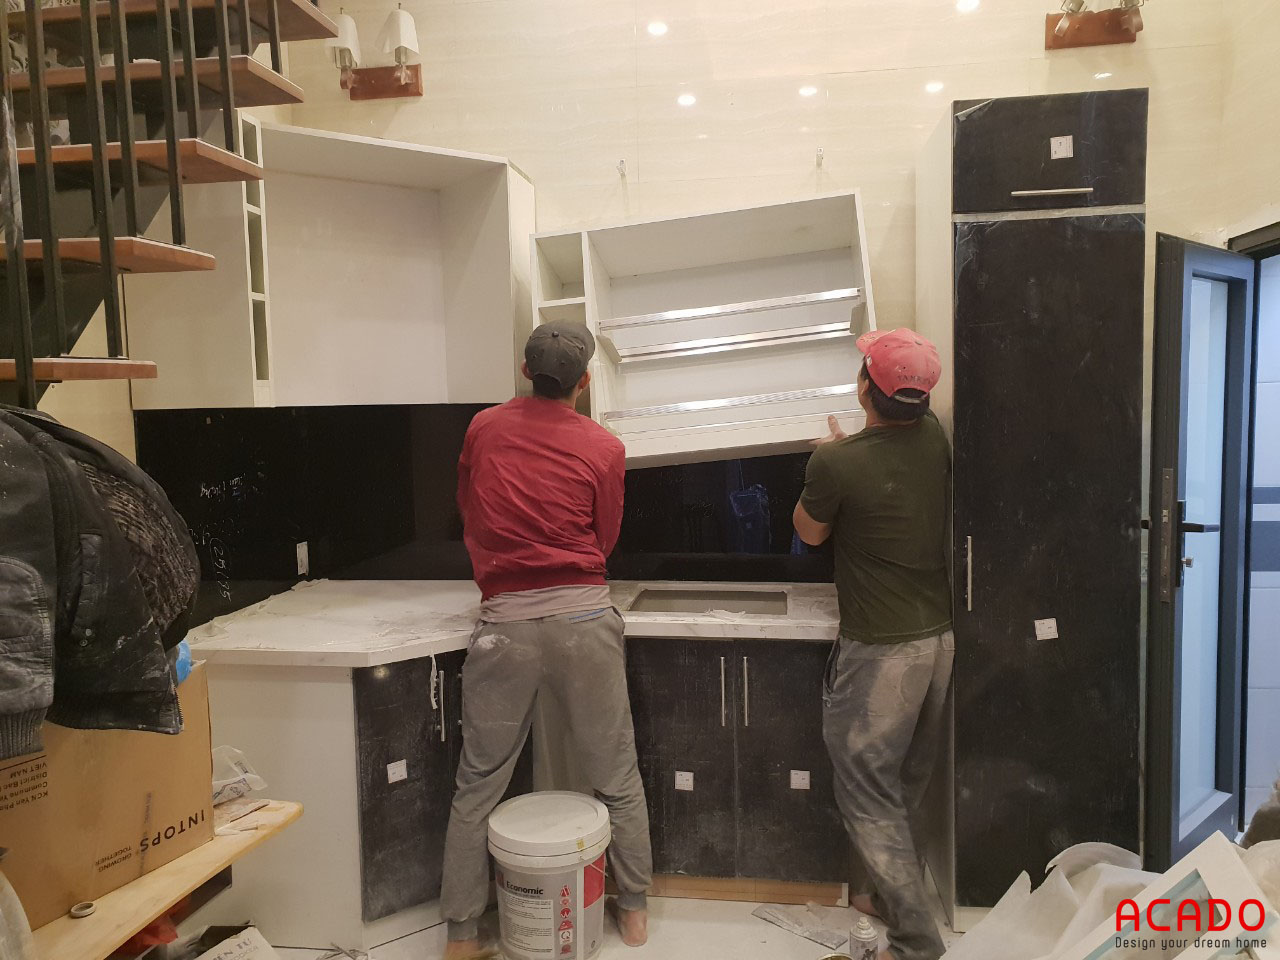 Thợ thi công Acado đang tiến hành lắp đặt tủ bếp 